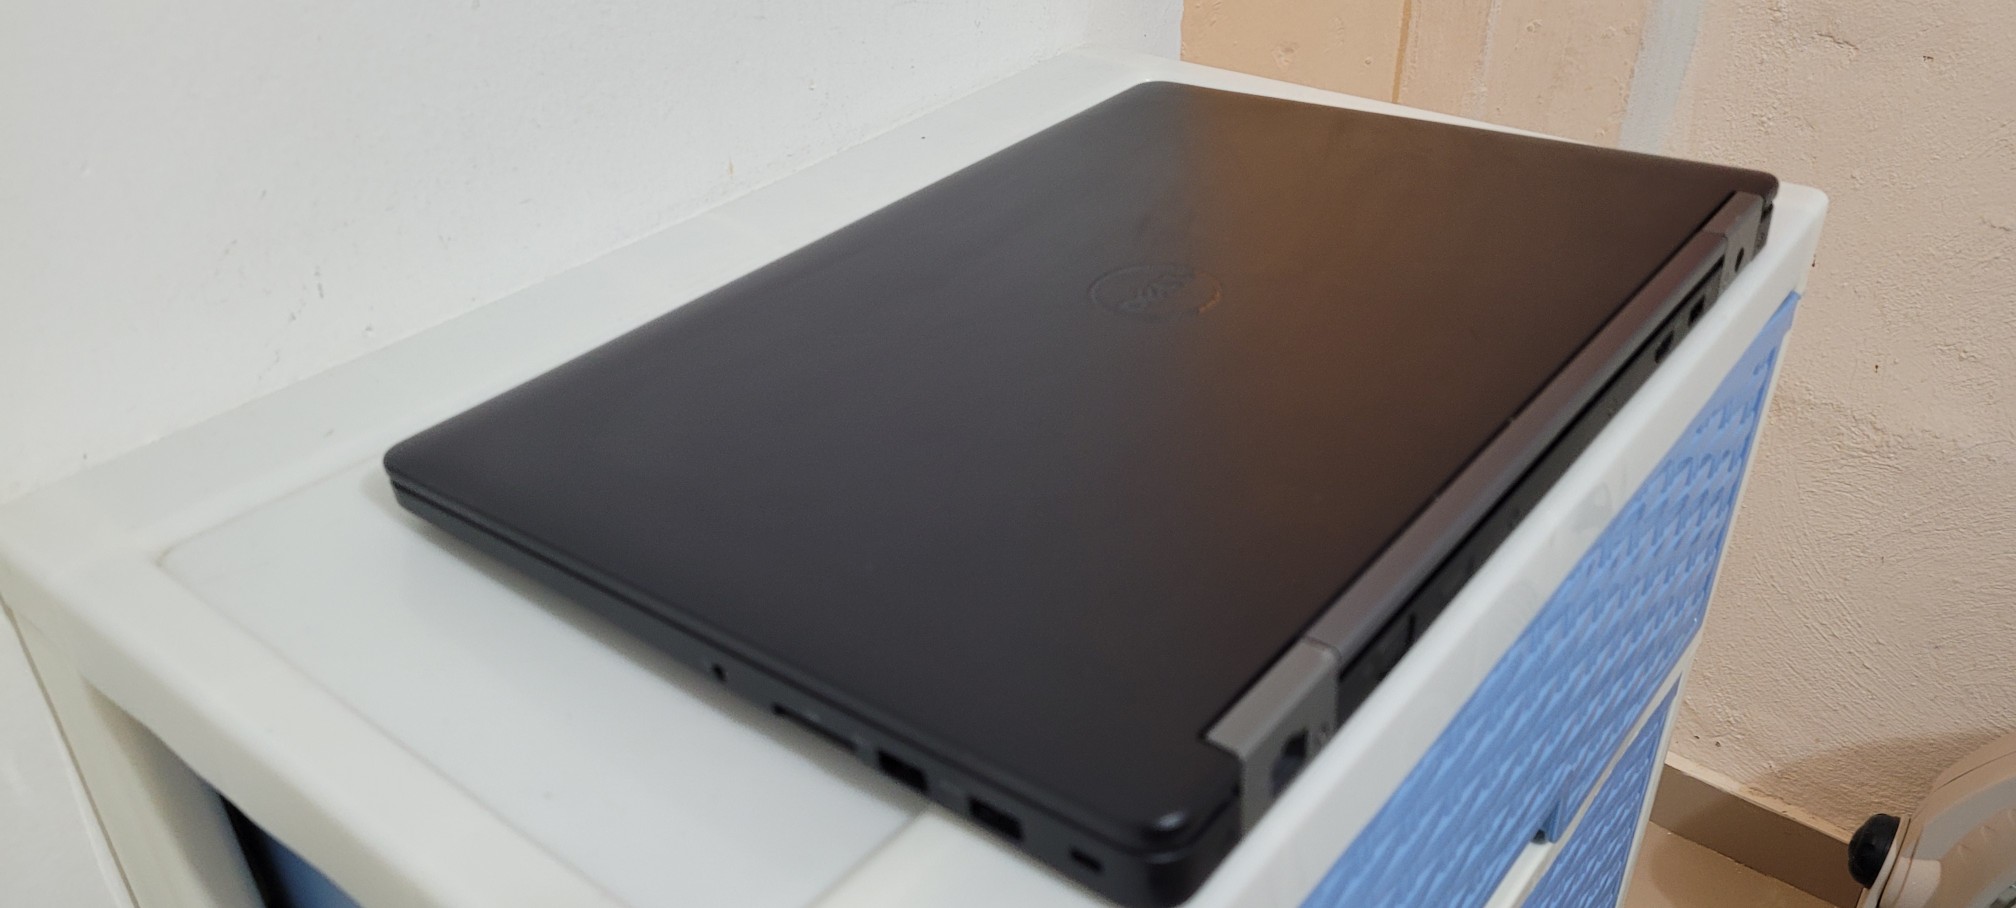 computadoras y laptops - Dell 5570 17 Pulg Core i5 6ta Gen Ram 8gb ddr4 Disco 256gb SSD Full 2